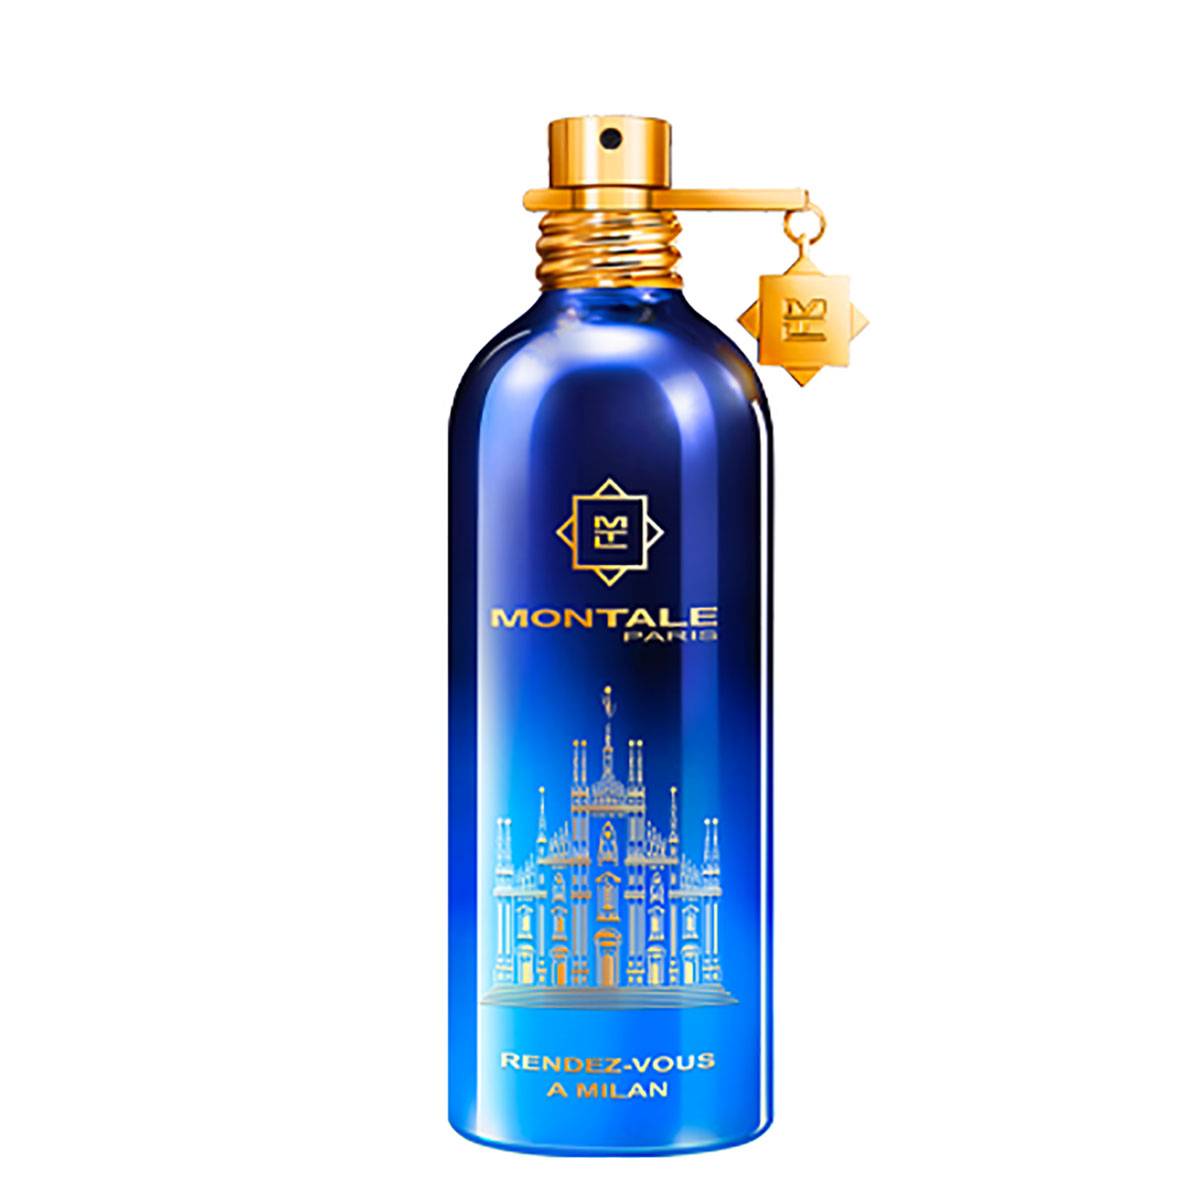 Woda perfumowana Montale Rendez-vous à Milan, cena: 620 zł / 100 ml / Perfumeriaquality.pl (Fot. Materiały prasowe)